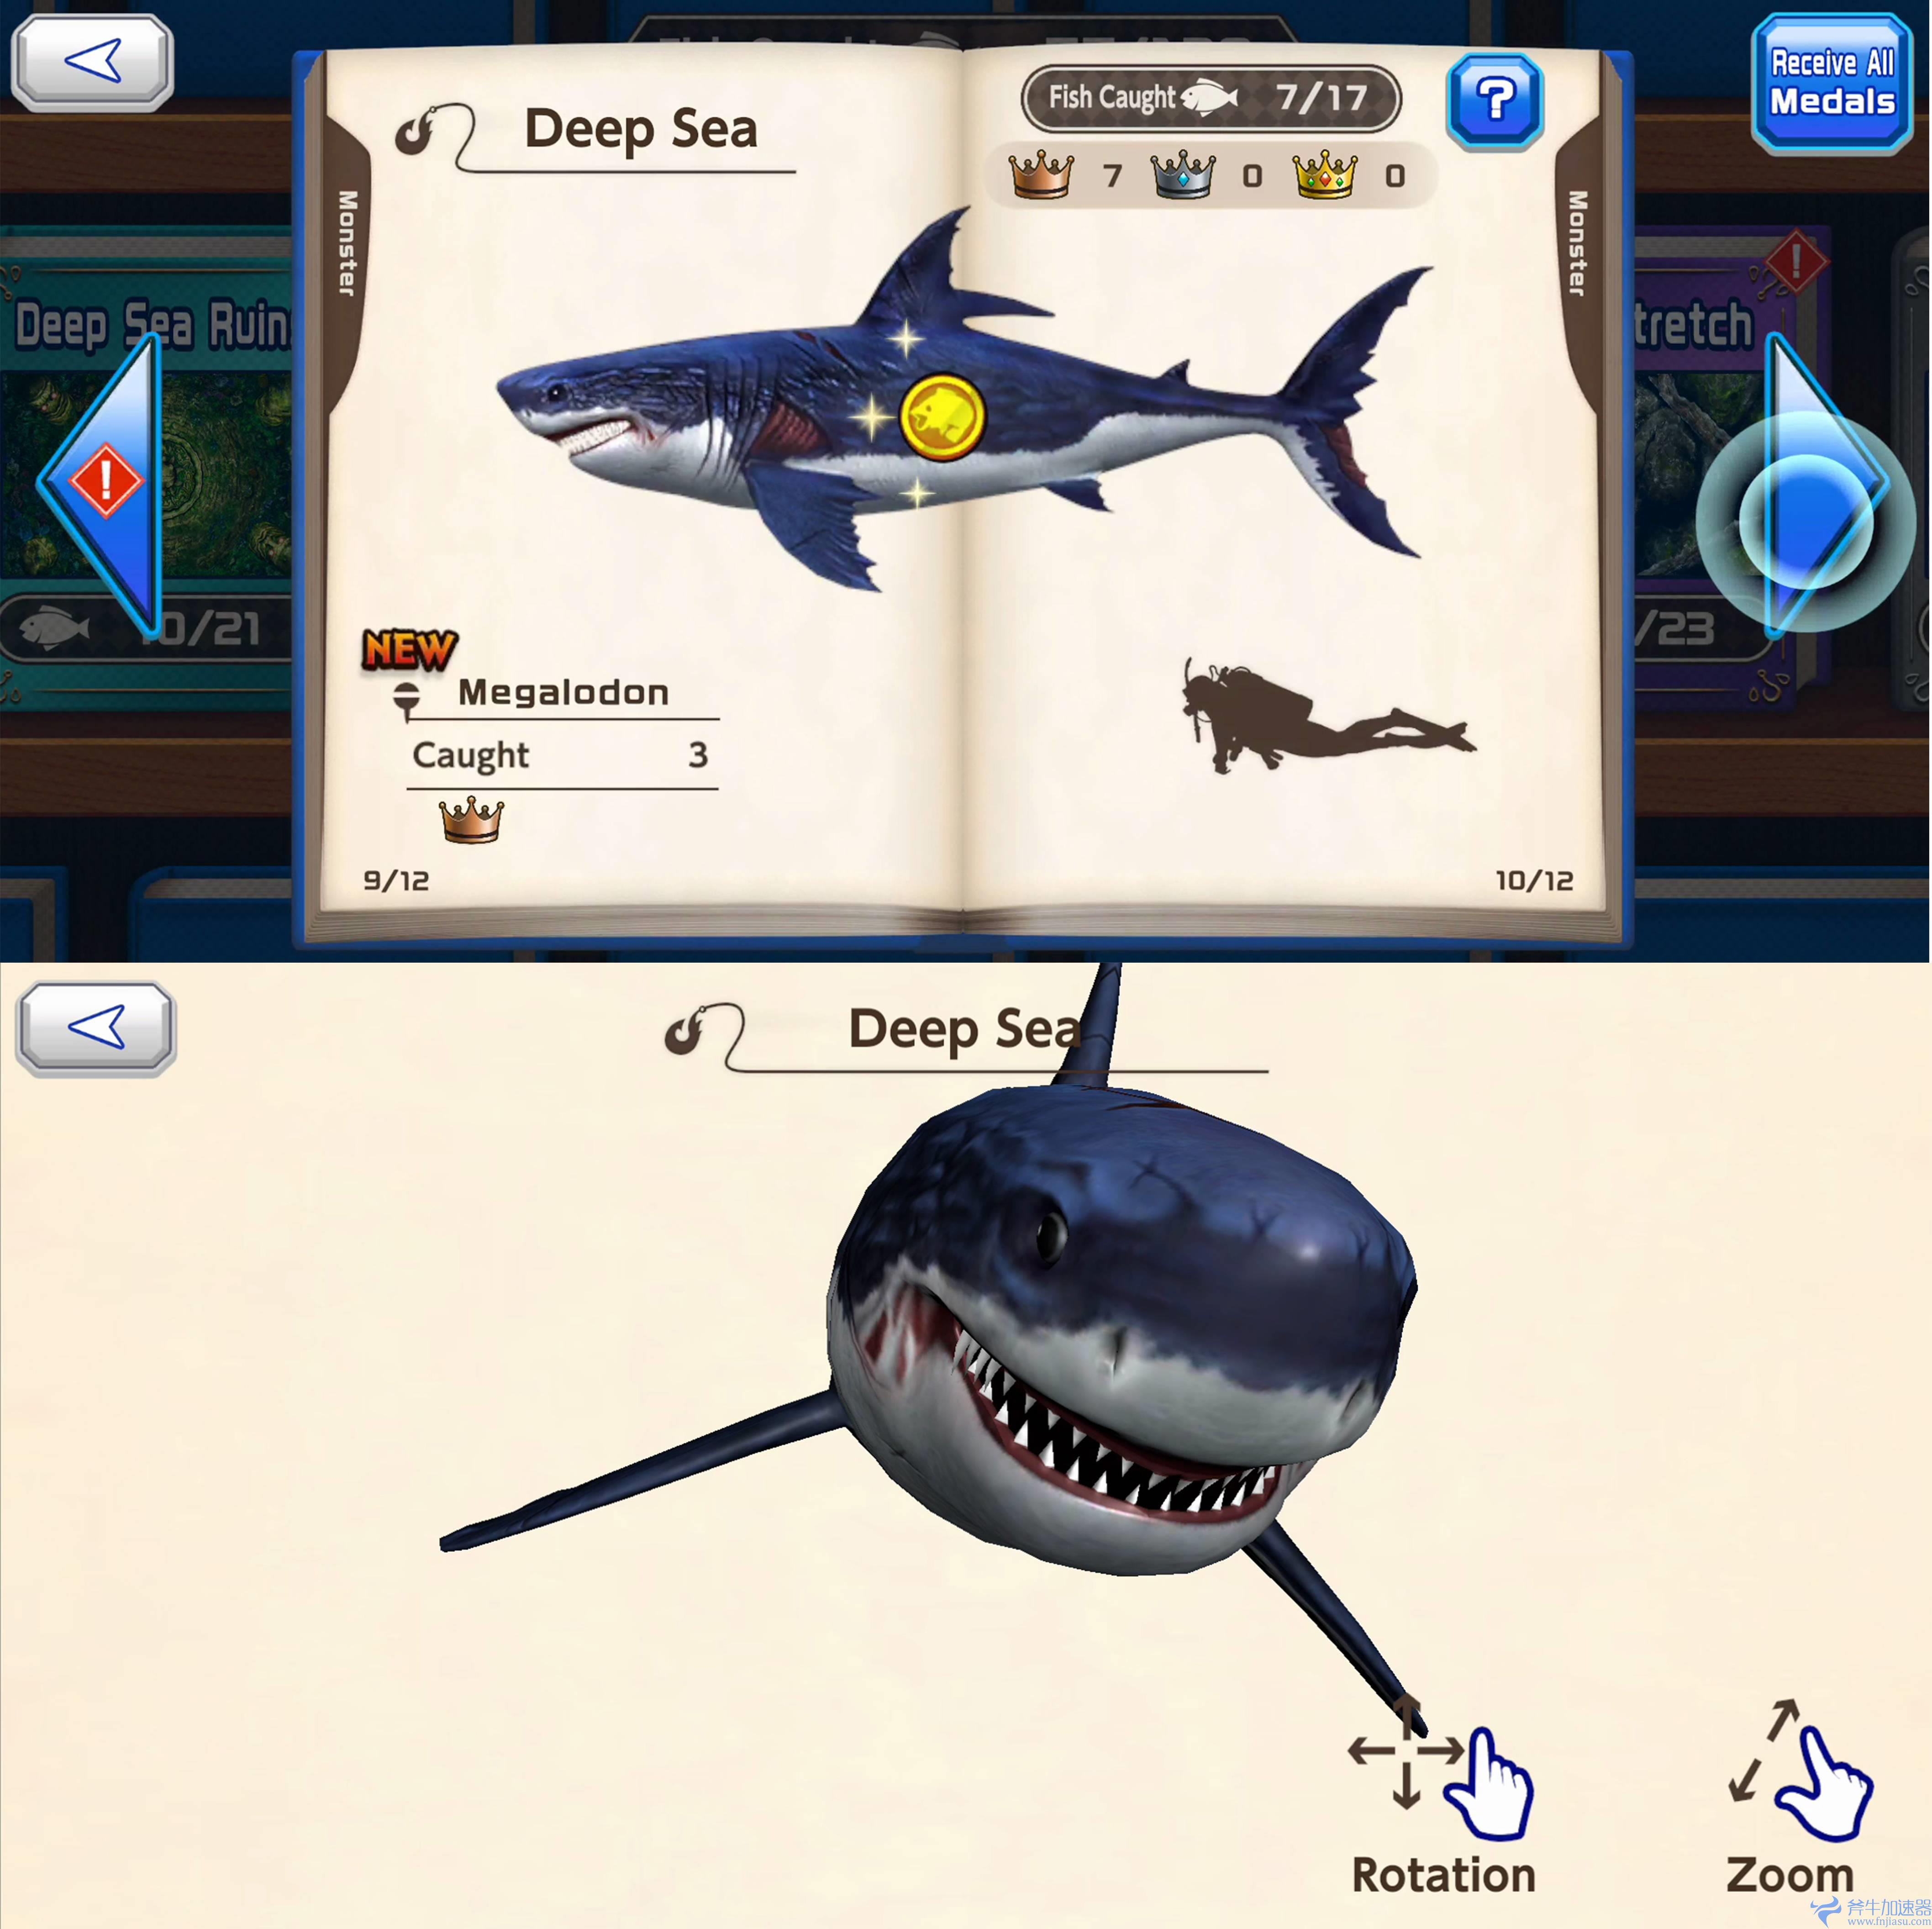 人气钓鱼模拟游戏《Ace  Angler》正式推出手游！一起在《Ace  Angler  Fishing  Spirits  M》